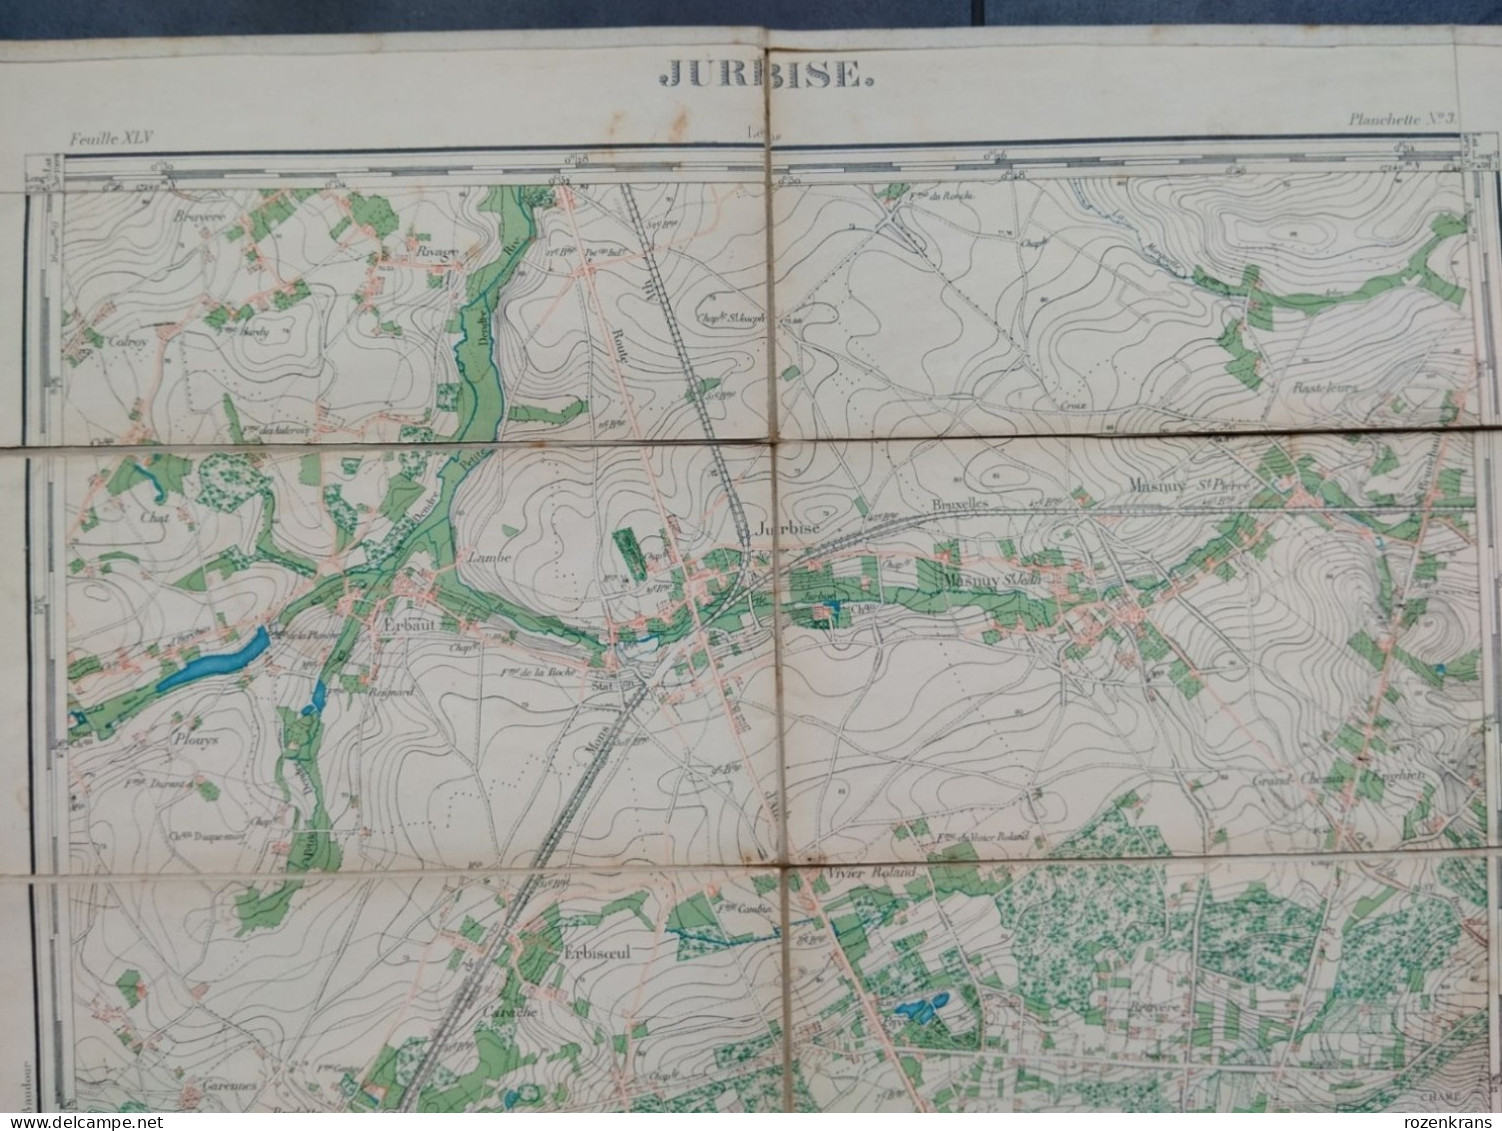 Carte topographique toilée militaire STAFKAART 1870 JURBISE Erbaut Maisieres Nimy Ghlin Verrerie Masnuy St Jean Pierre